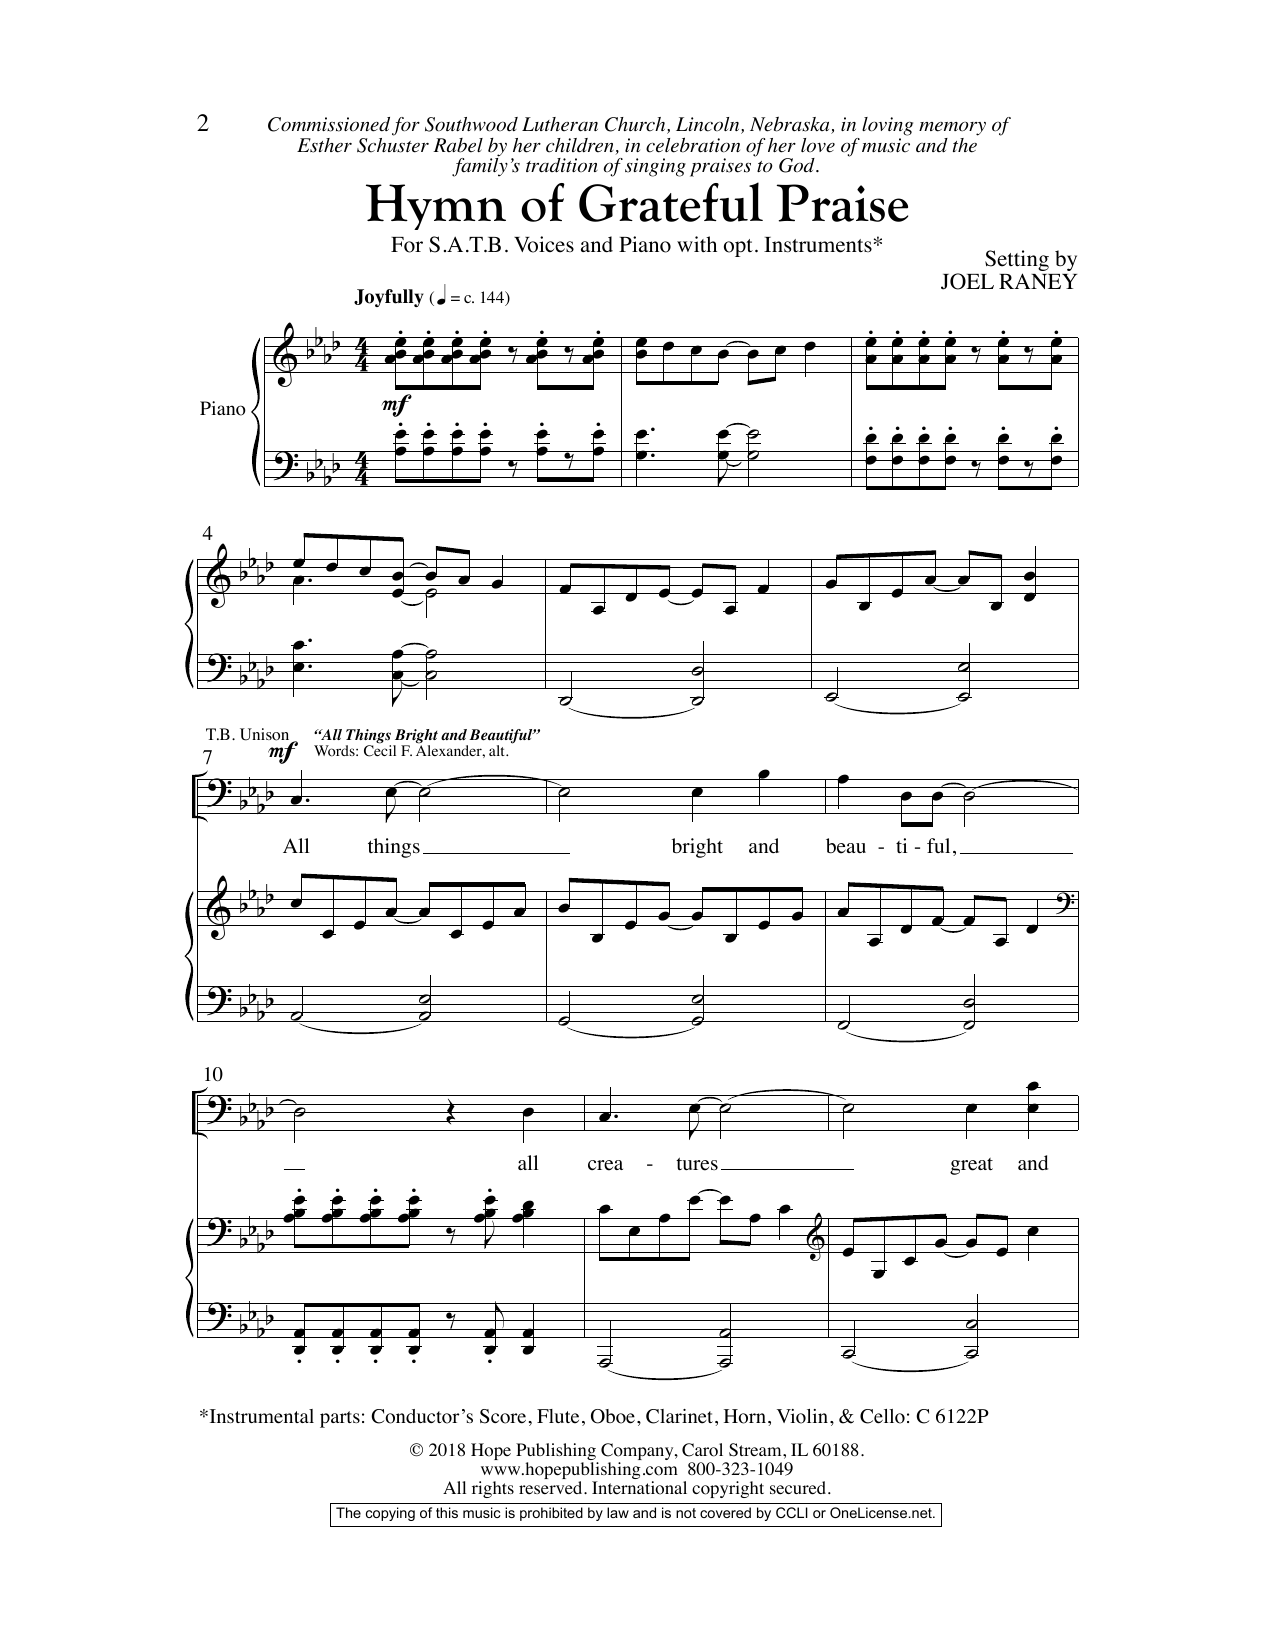 Download Joel Raney Hymn Of Grateful Praise Sheet Music